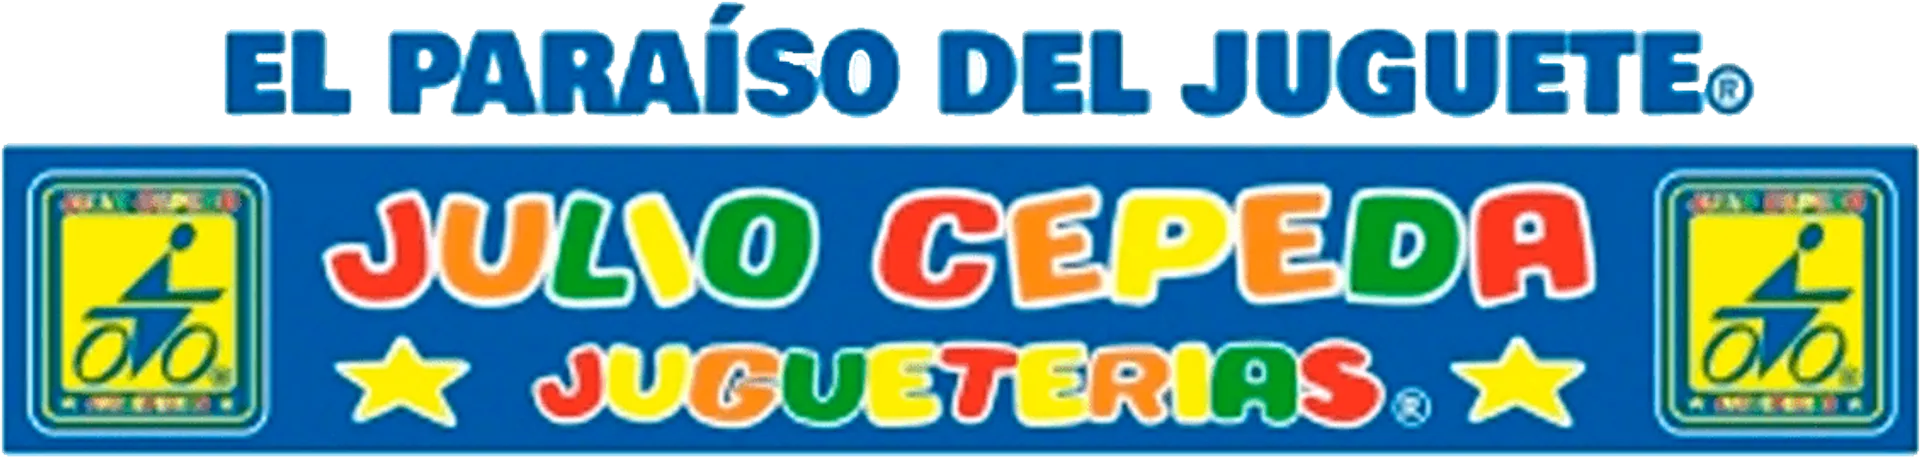 JULIO CEPEDA JUGUETERÍAS logo